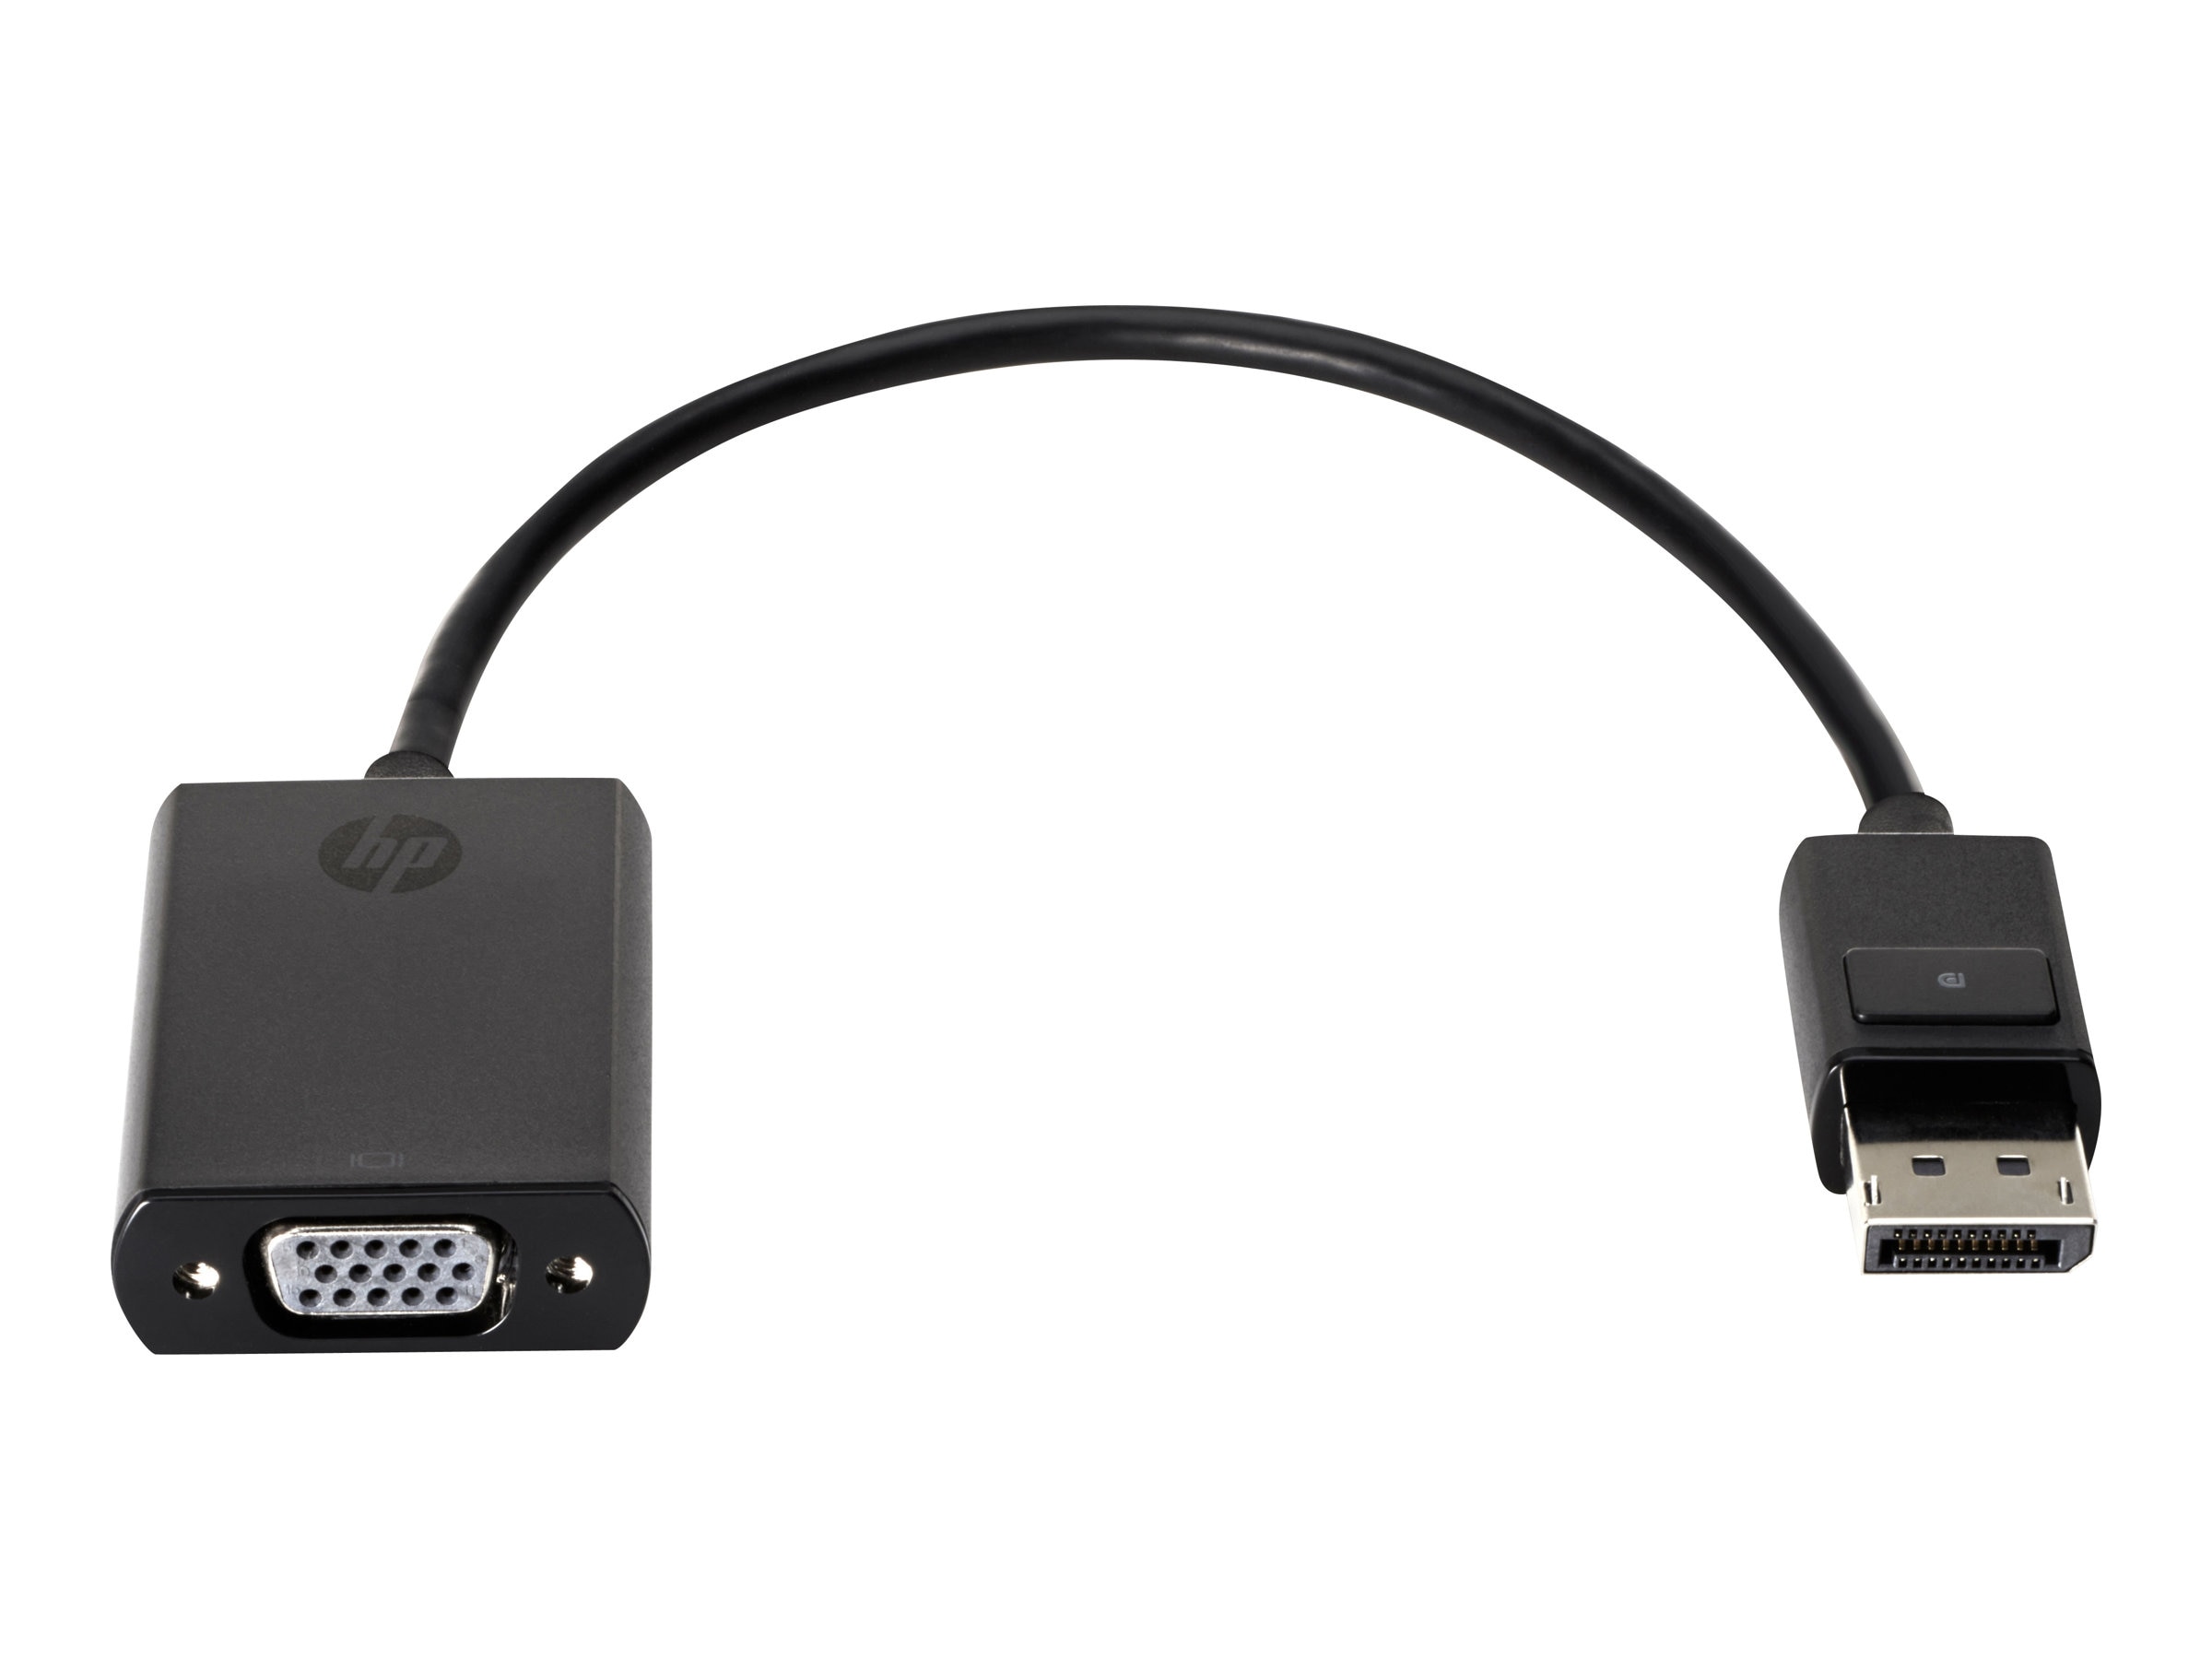 HP Display Port to VGA DP-VGA Adapter Cable AS615AA 481408-002 001 003 004 